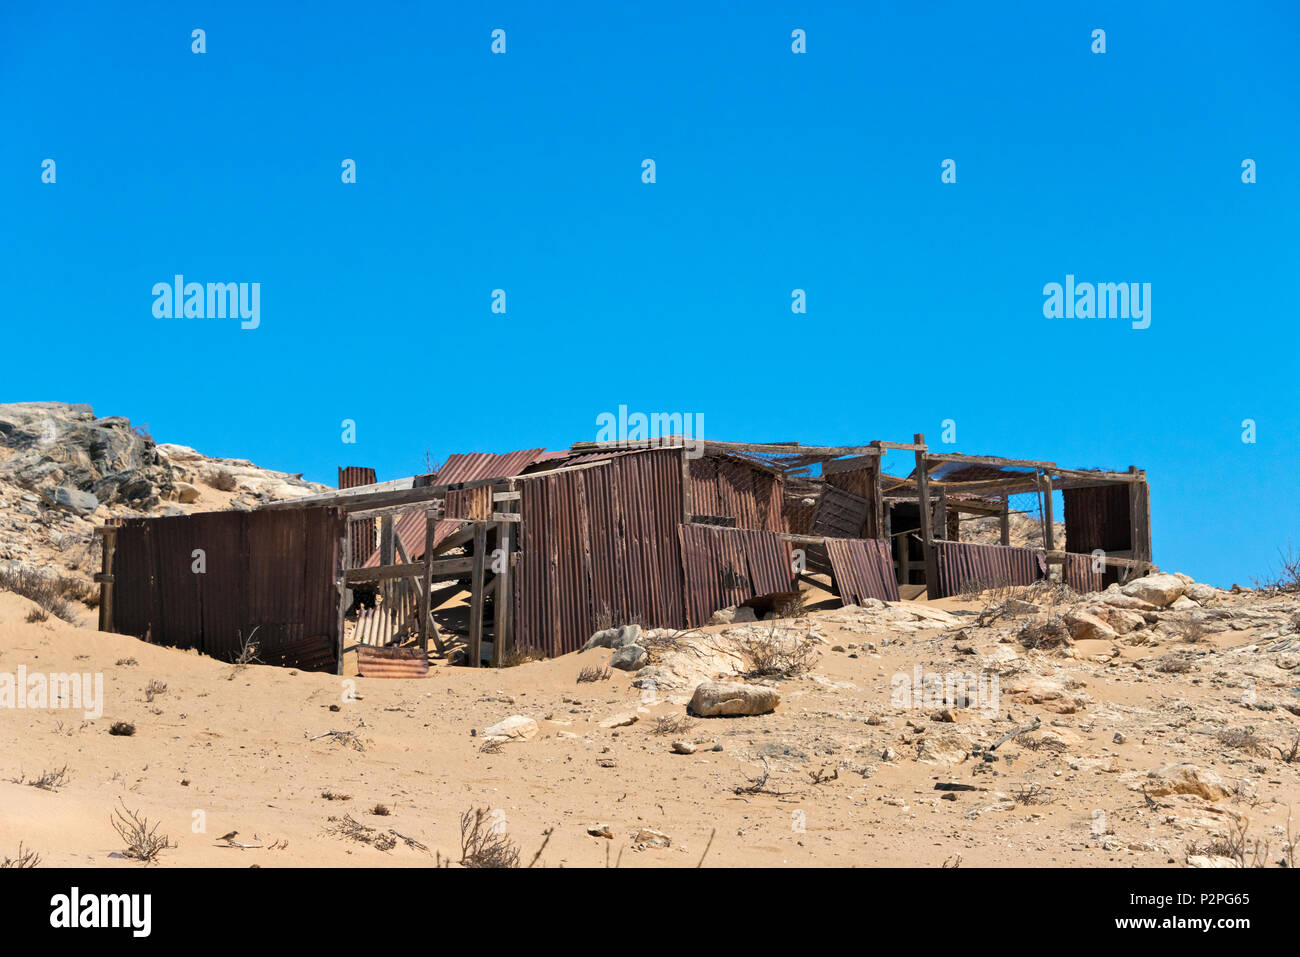 Deserted building, Frankenhaus, Kolmanskop, a desert ghost town 20 km out of Luderitz, Kalahari Desert, Karas Region, Namibia Stock Photo